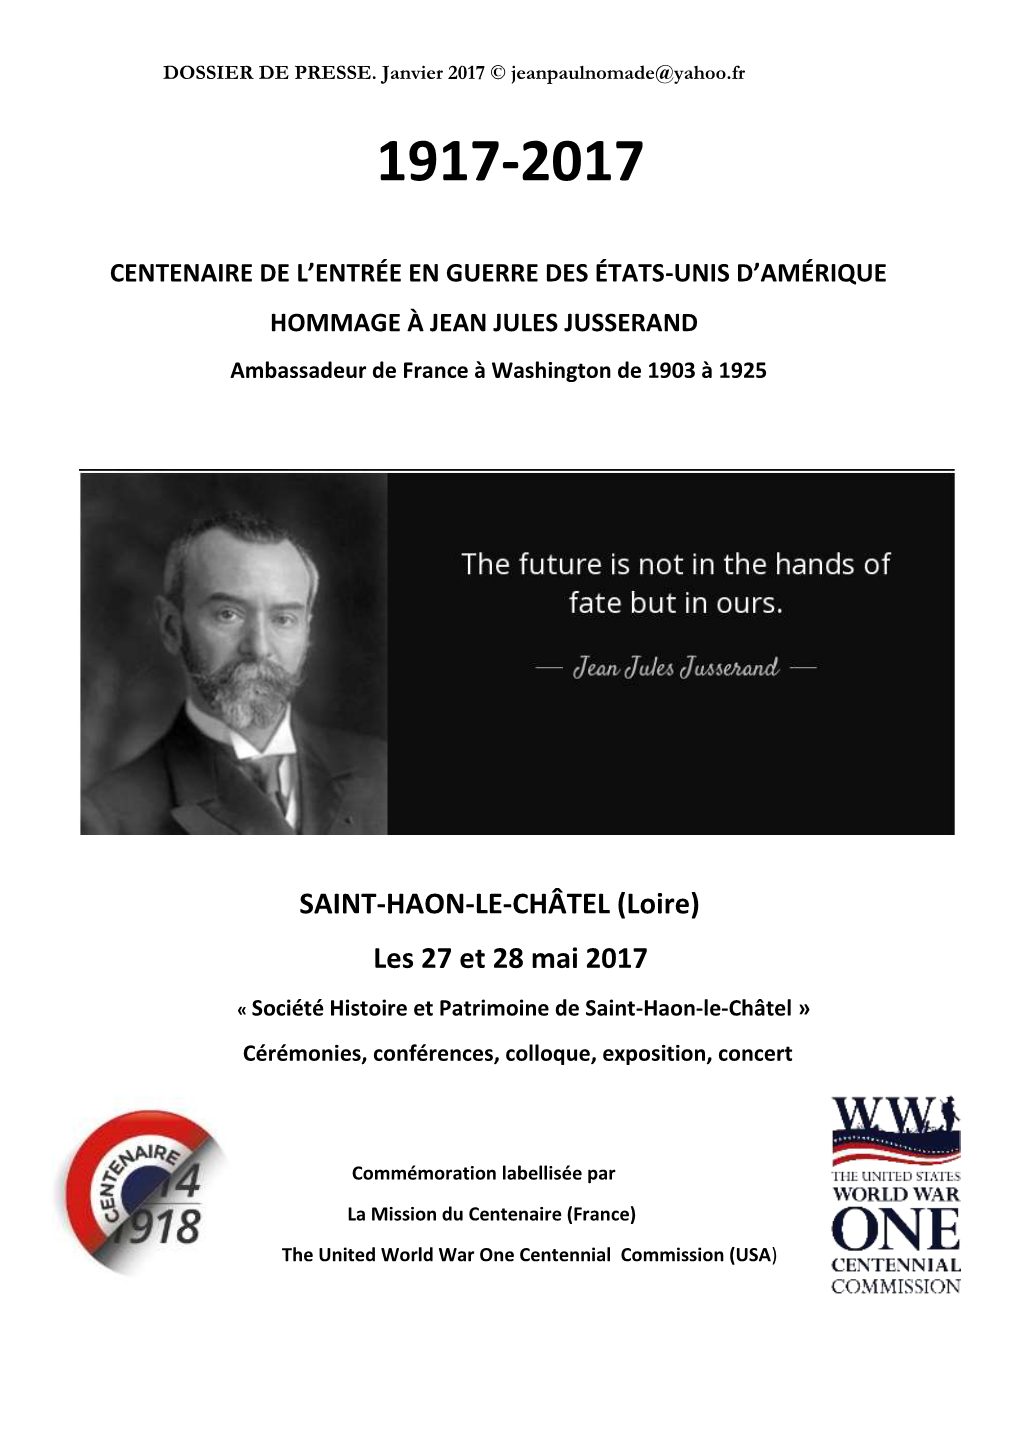 SAINT-HAON-LE-CHÂTEL (Loire) Les 27 Et 28 Mai 2017